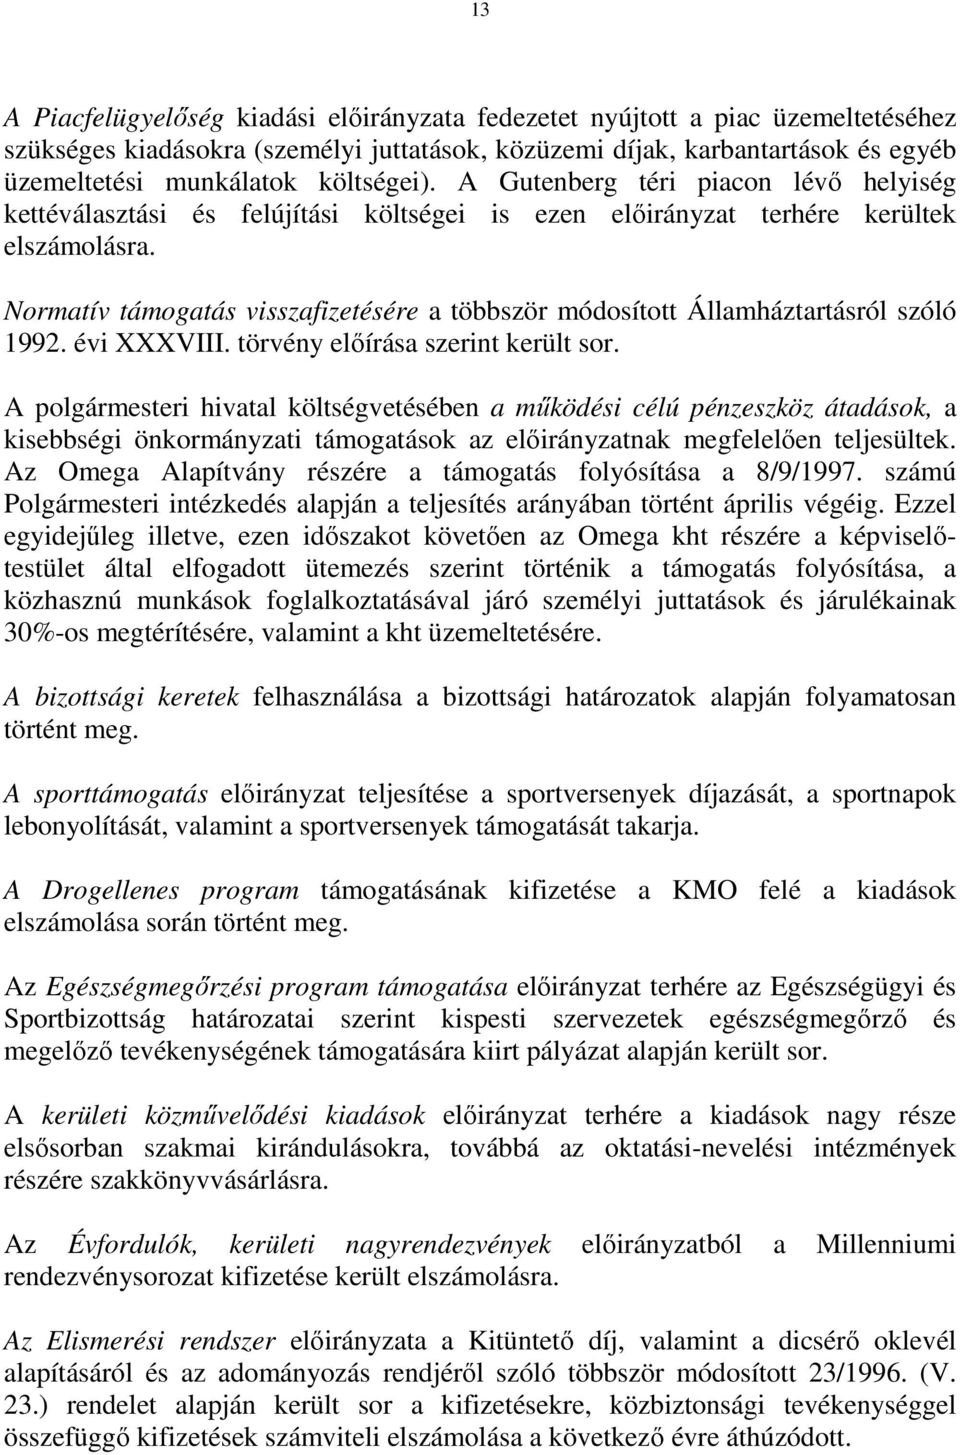 Normatív támogatás visszafizetésére a többször módosított Államháztartásról szóló 1992. évi XXXVIII. törvény elıírása szerint került sor.